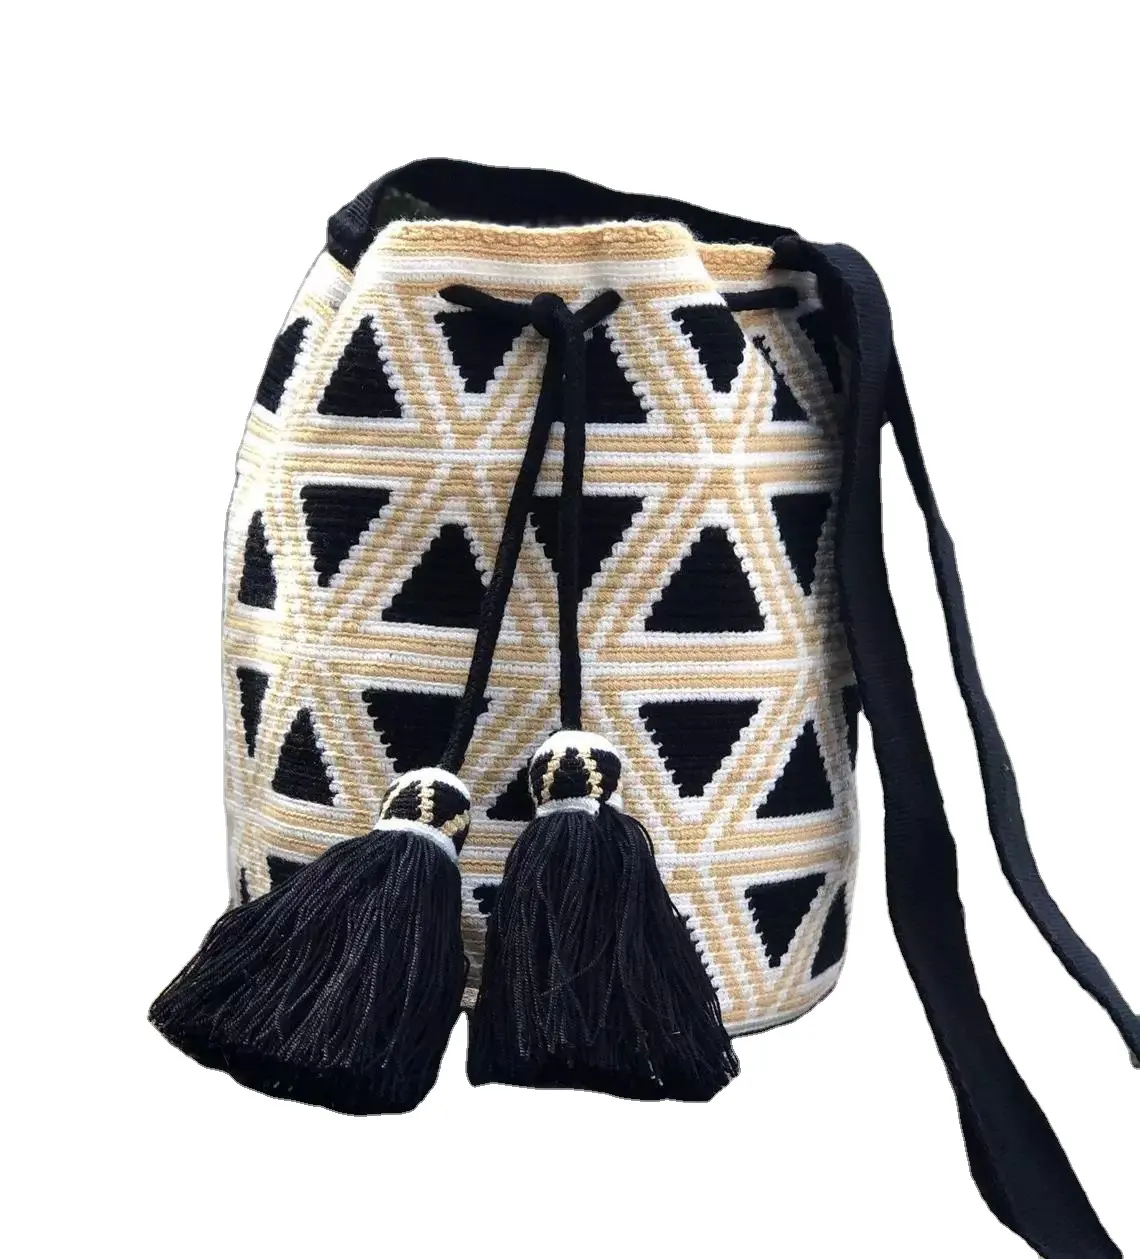 カスタム卸売かぎ針編みレディースバッグ春夏レディースショルダーバッグIsar Internationalからオンラインで購入